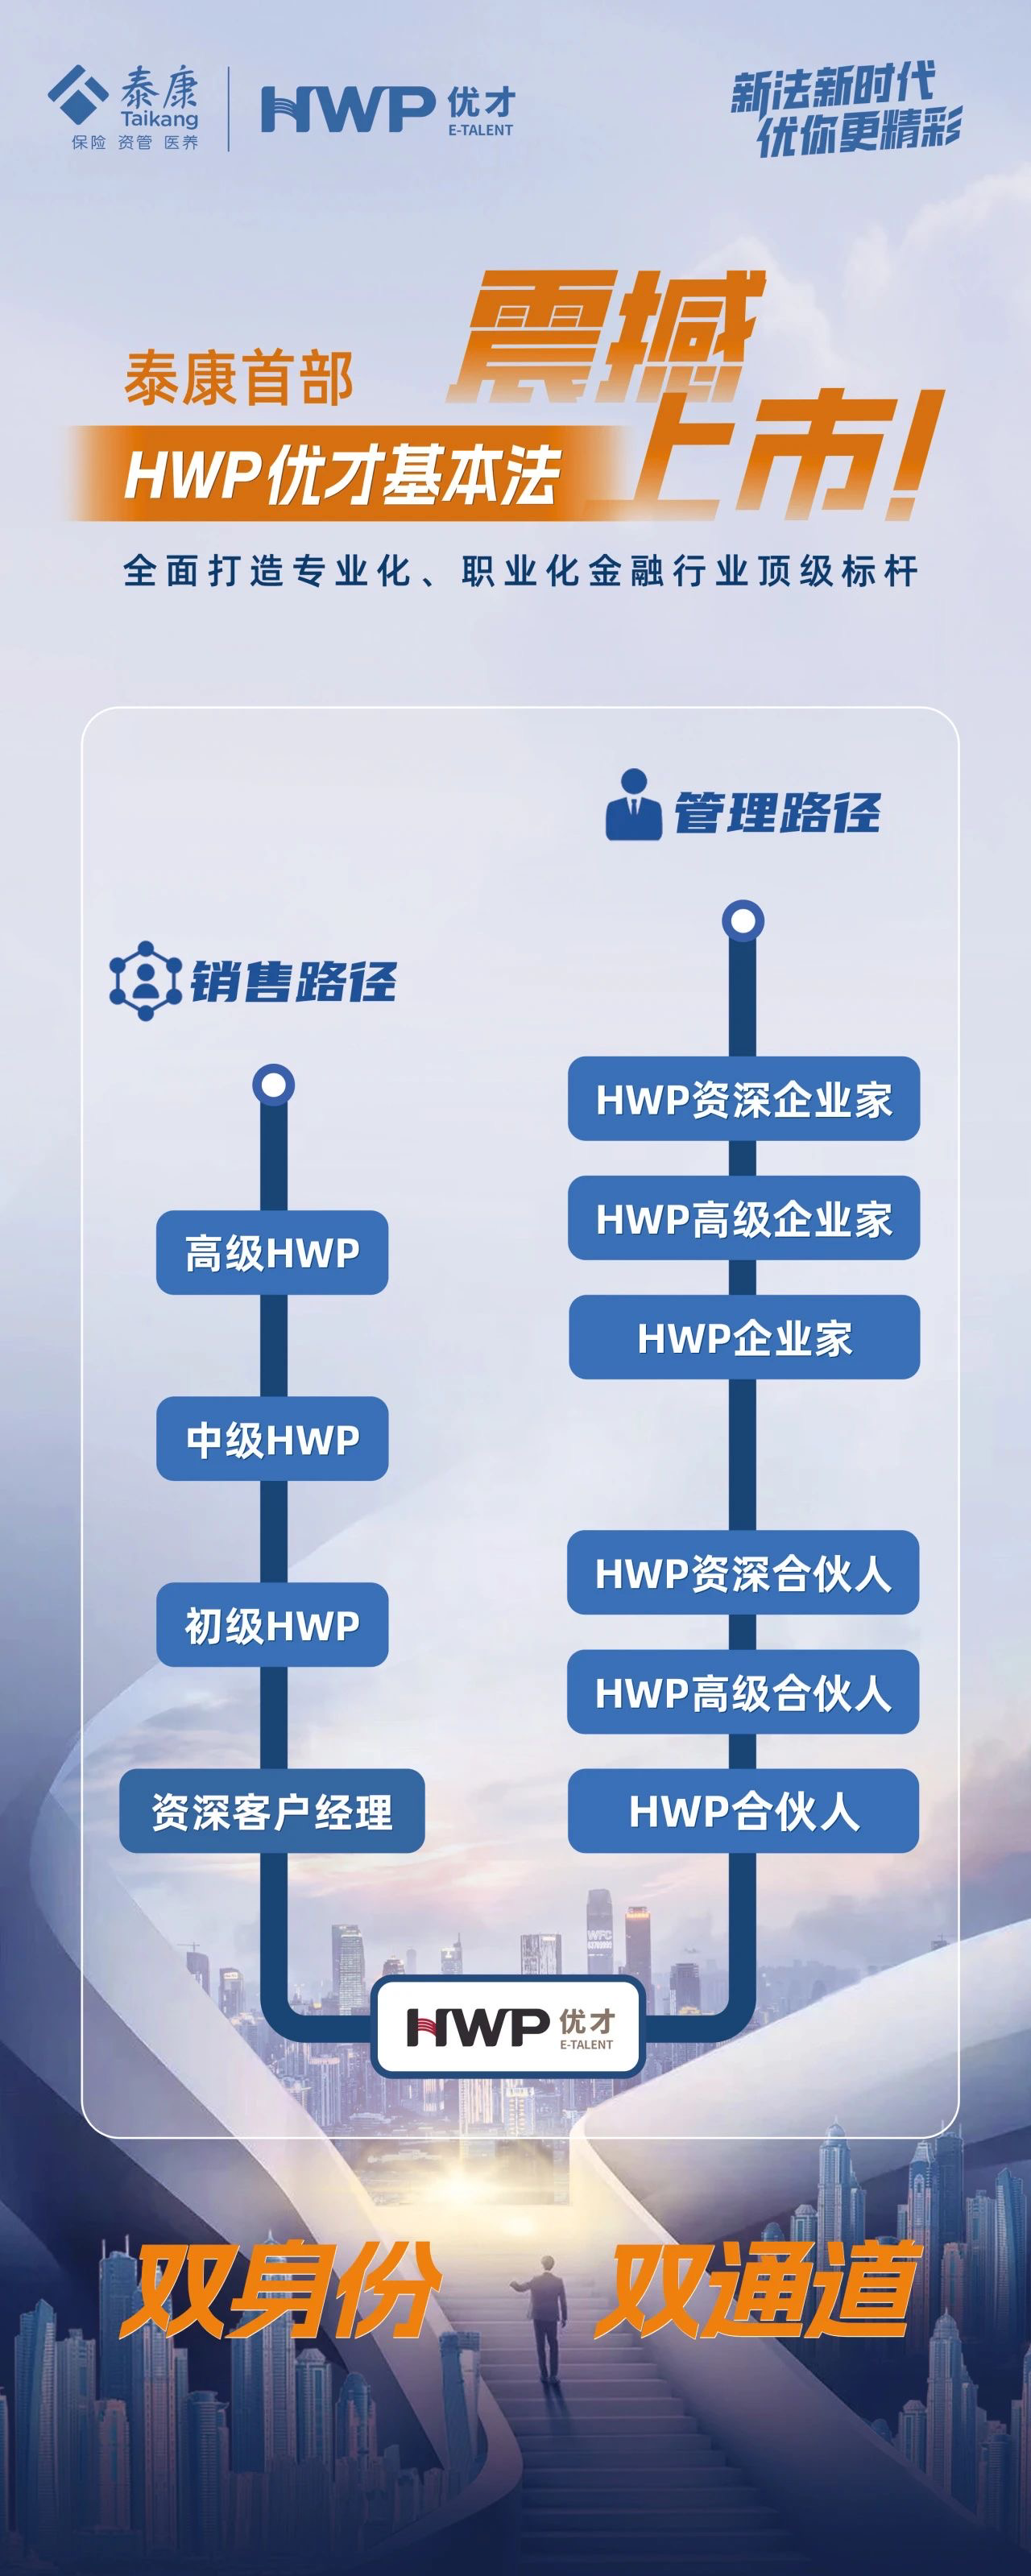 泰康人寿HWP优才项目全国启航